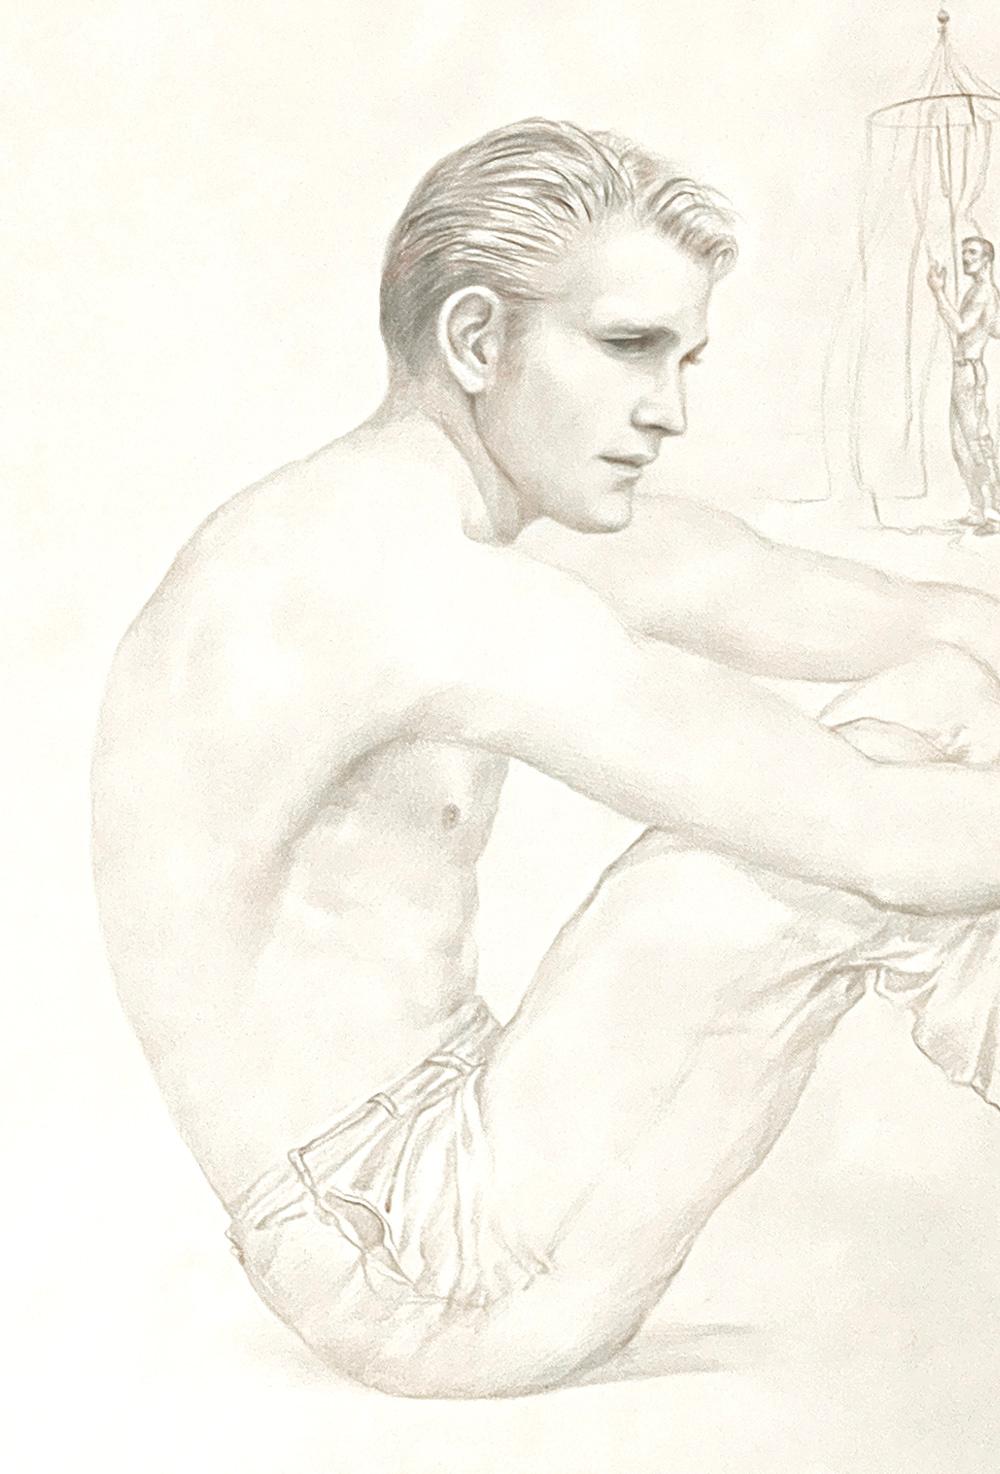 Eine seltene, frühe Zeichnung von John B. Lear zeigt einen gut aussehenden, nachdenklichen jungen Mann ohne Hemd, der am Strand sitzt und die Beine in die Arme genommen hat. Im Laufe seiner langen Karriere stellte Lear gerne nackte oder halbnackte